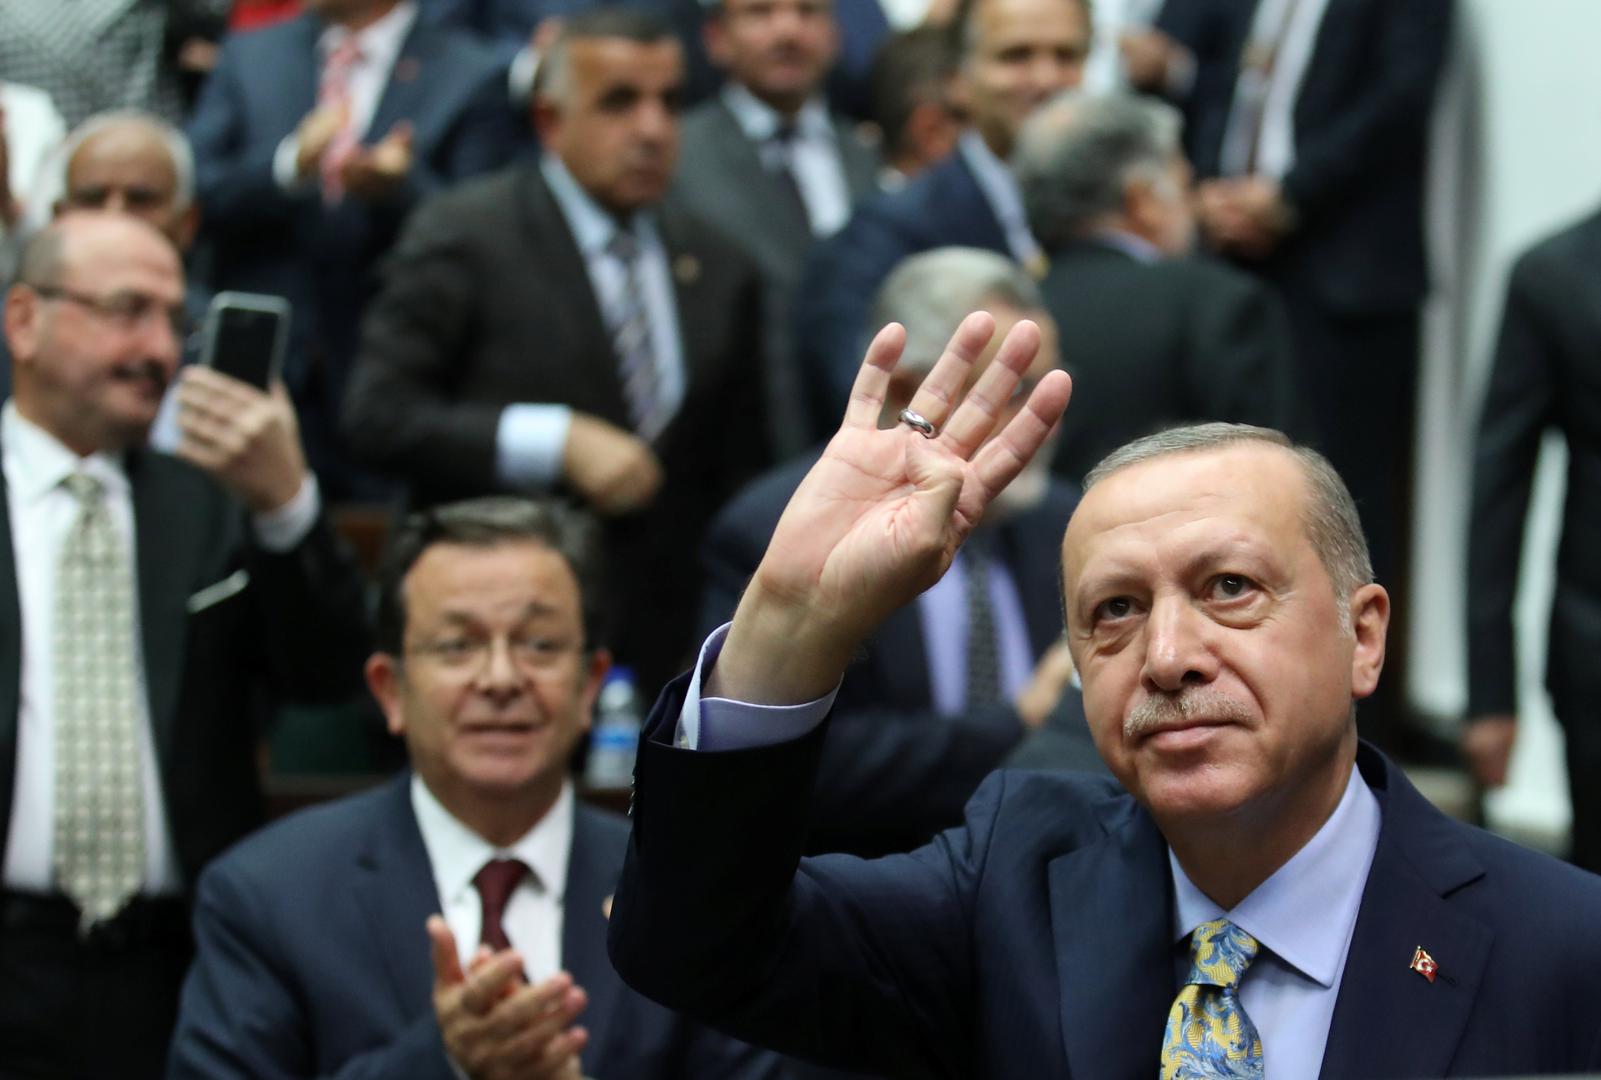 Svi se pitaju zašto Erdoğan u turskom parlamentu nije pustio snimku mučenja Khashoggija. Odgovor je vrlo jednostavan: Trump ga je zamolio da to ne čini. Ali Erdoğan će skupo naplatiti ovu šutnju